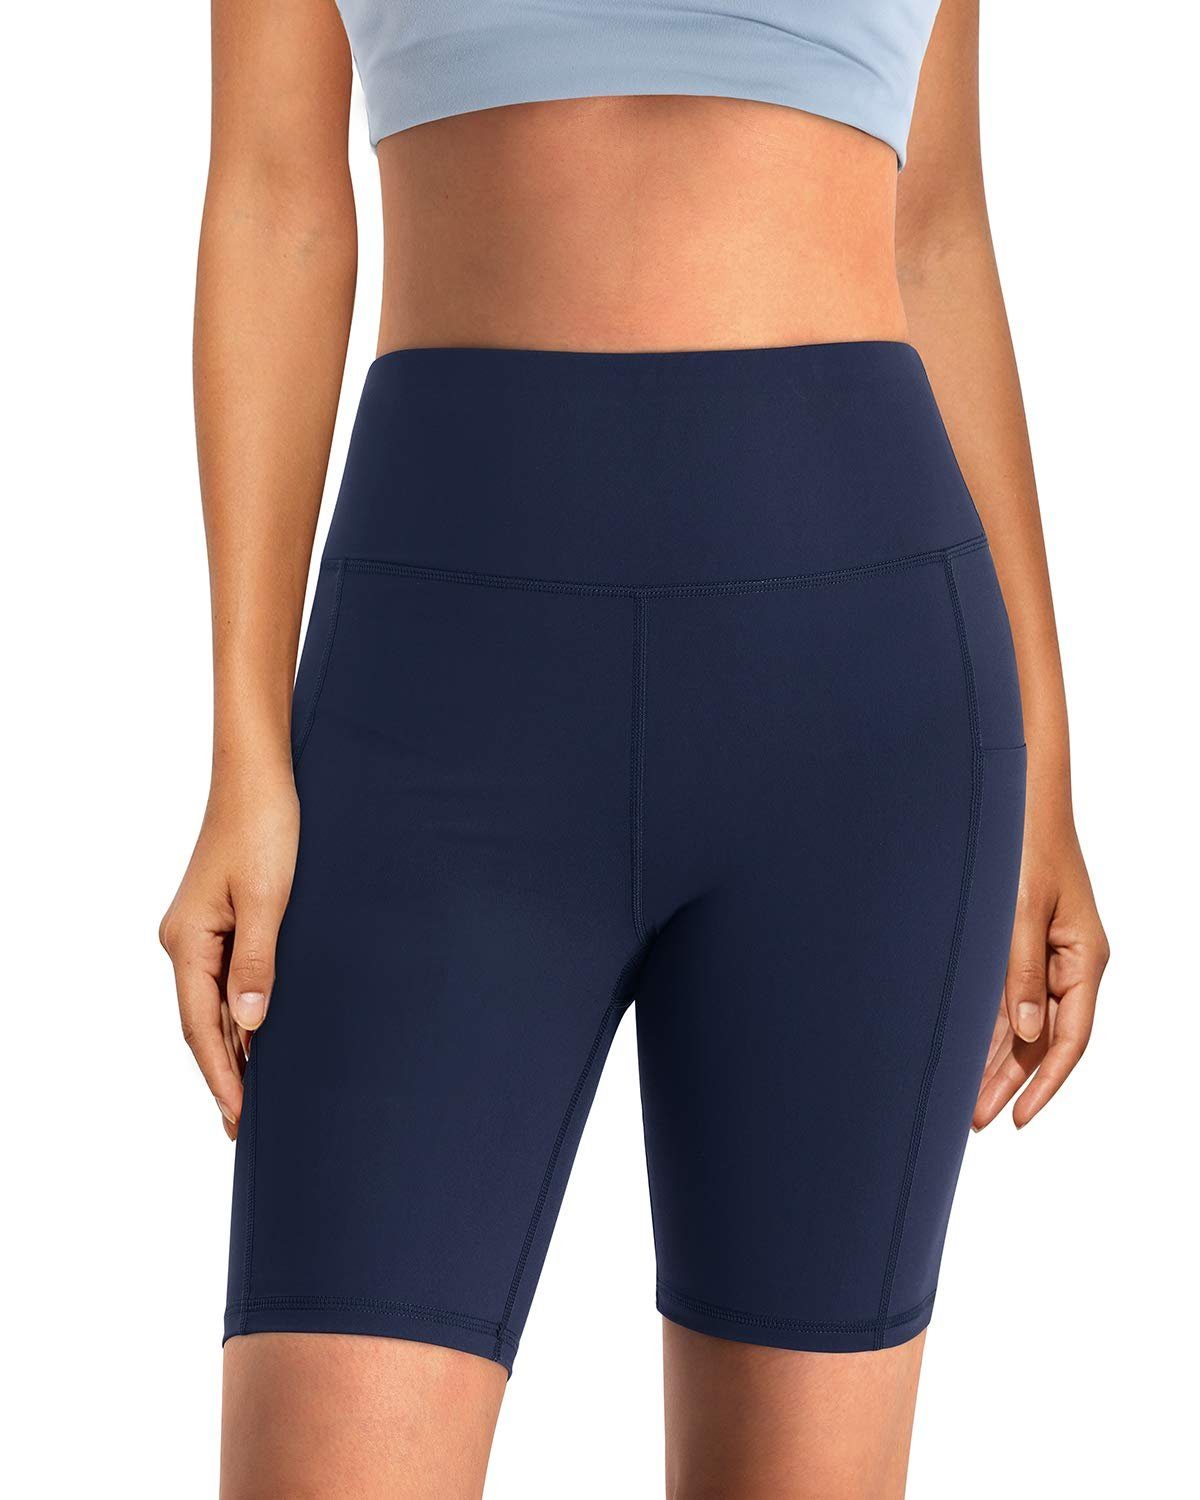 für Taschen Blau Yogashorts Yoga-Shorts und Frauen OTGFPM20A08 hoher Taille mit G4Free